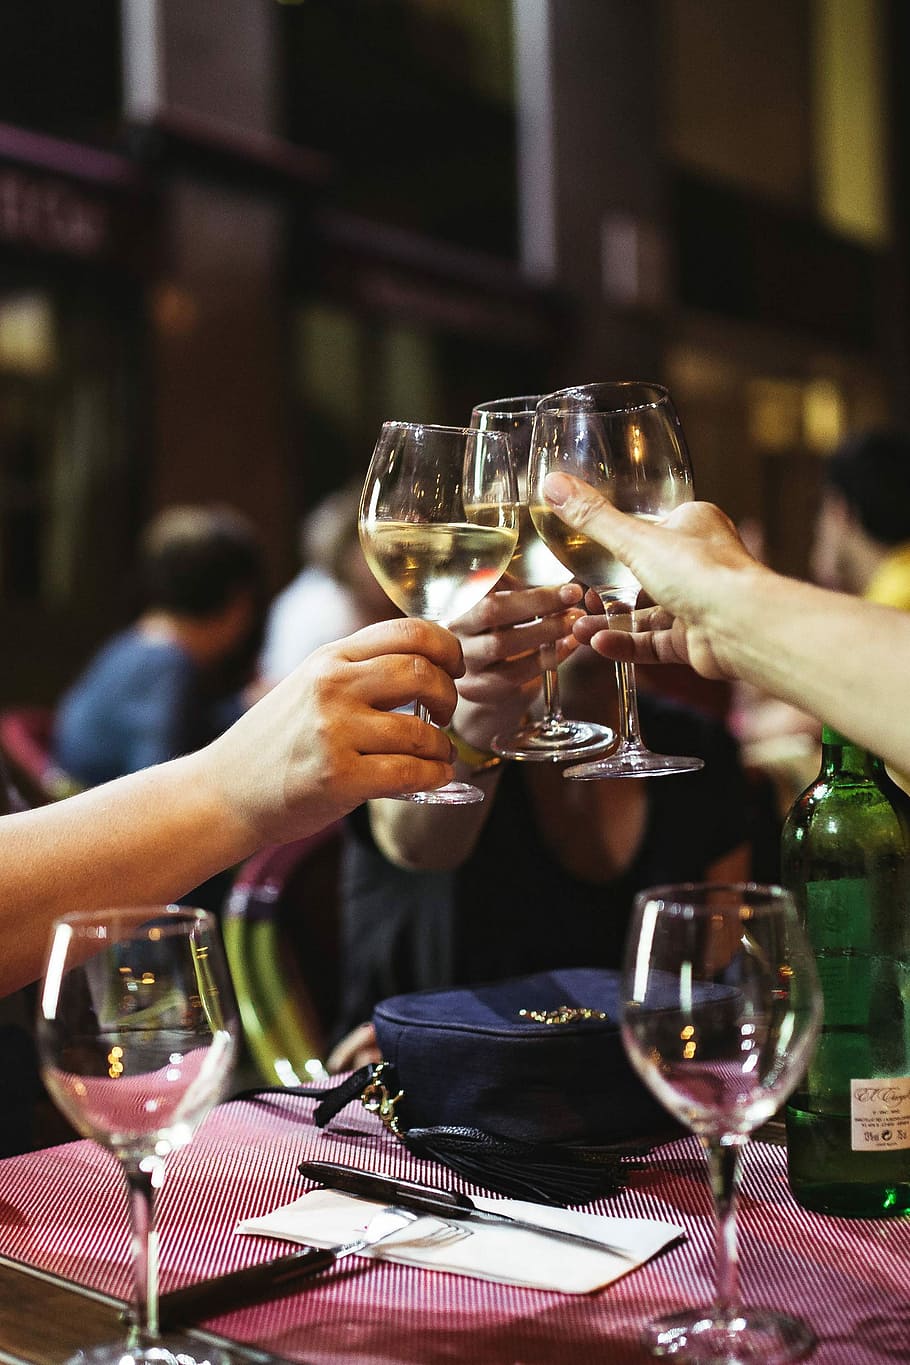 レストランワインを飲む, 友達, レストラン, 飲む, ワイン, イブニング, 楽しい, 幸せ, 女性, ディナー